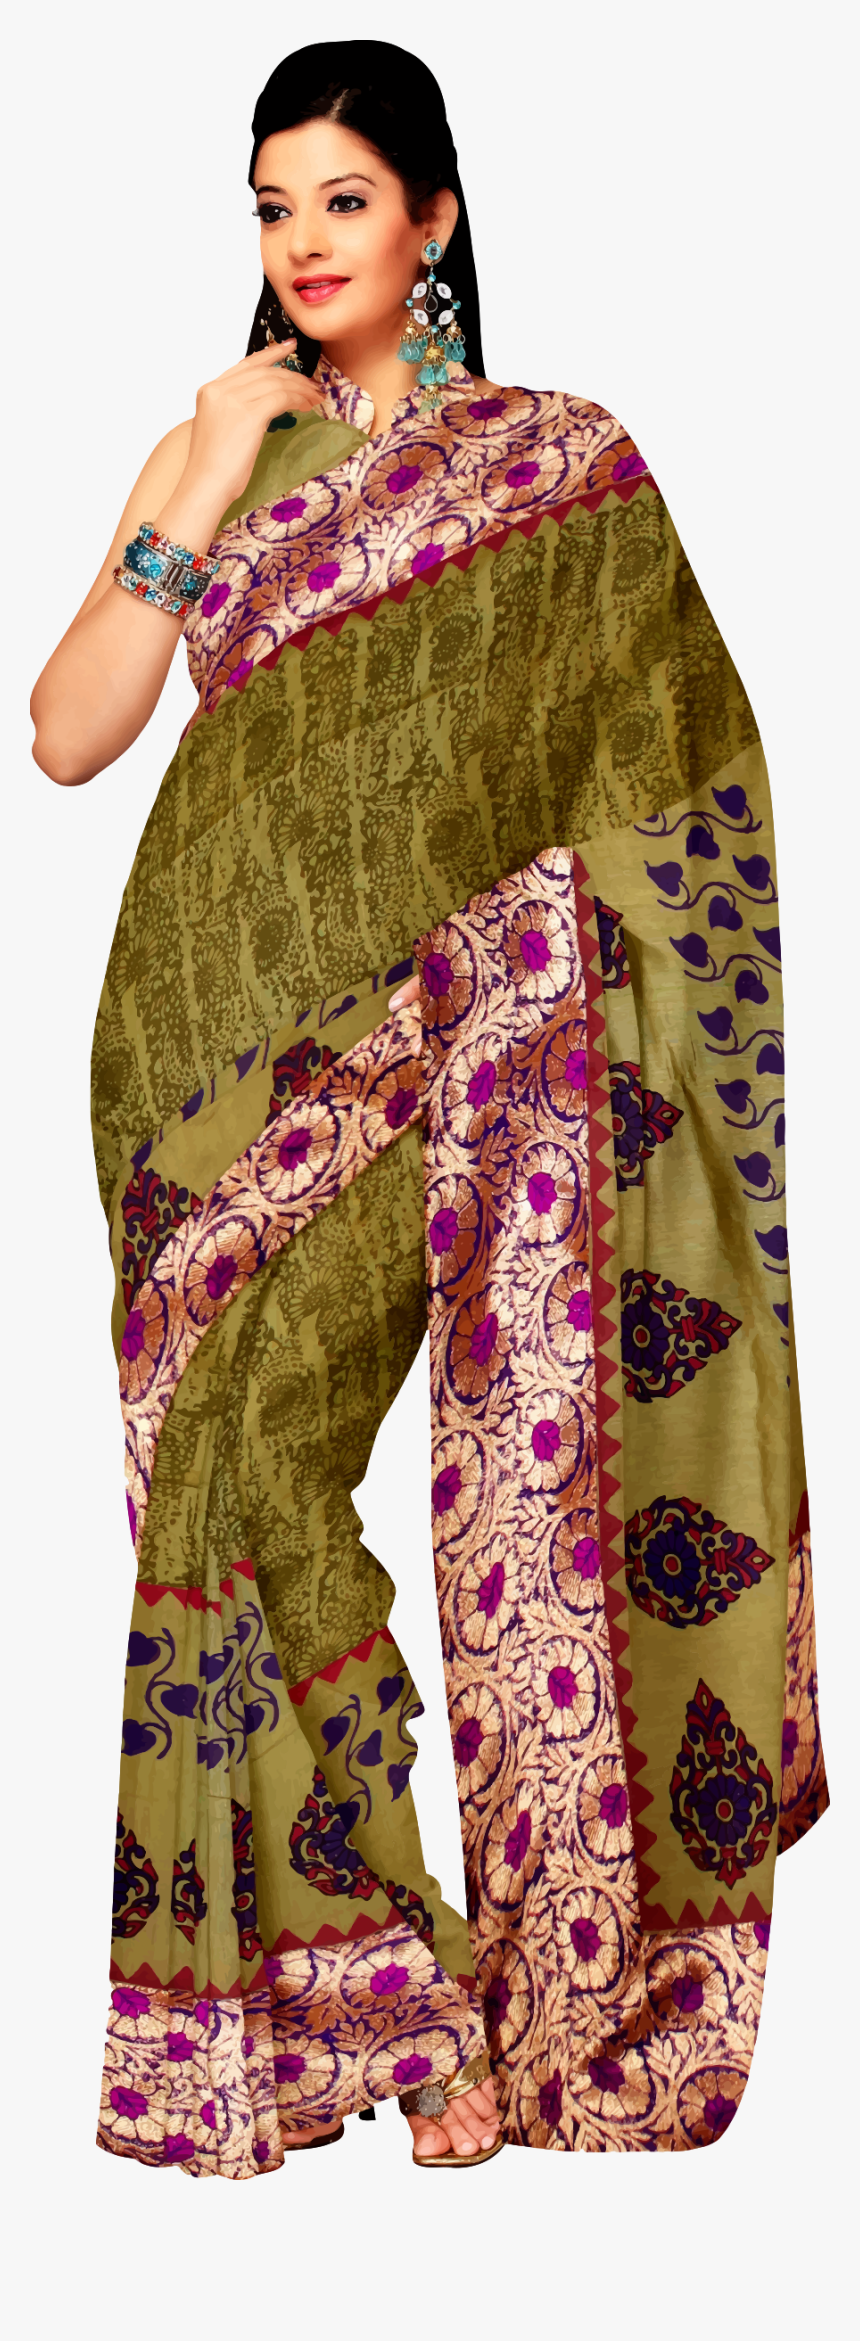 Saree Clipart Tiranga , Png Download - Saree Clipart Transparent, Png Download, Free Download